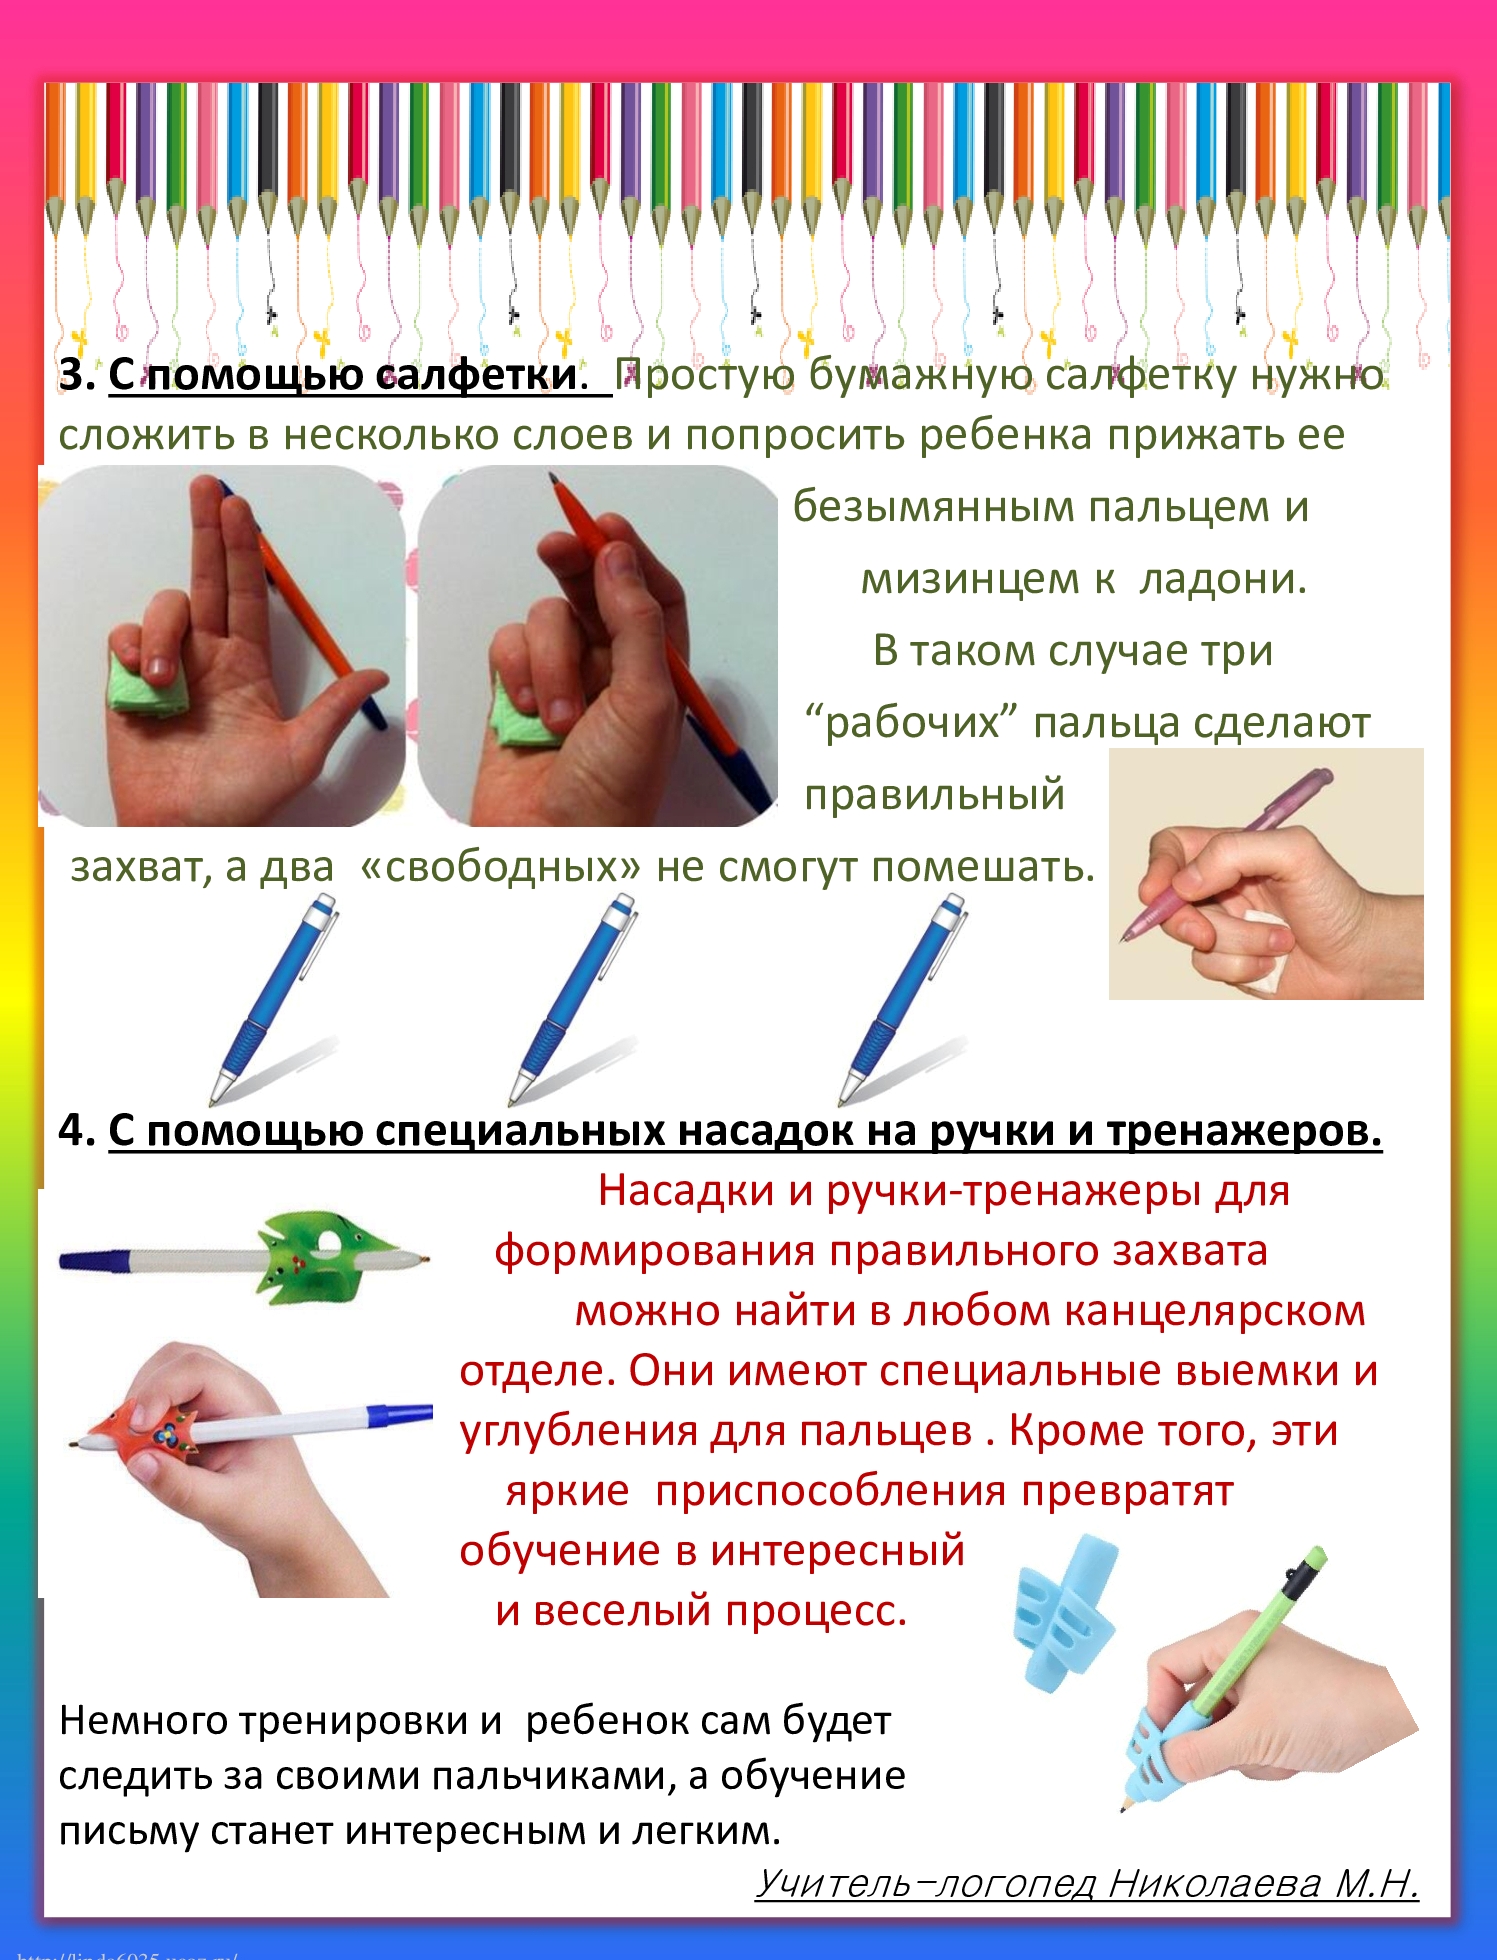 Постановка рук на учет. Как научить ребёнка правильно держать ручку при письме. Правильная постановка руки при письме для детей. Как научить ребёнка правильно держать карандаш в 4 года. Как правильнодержаьь руску.